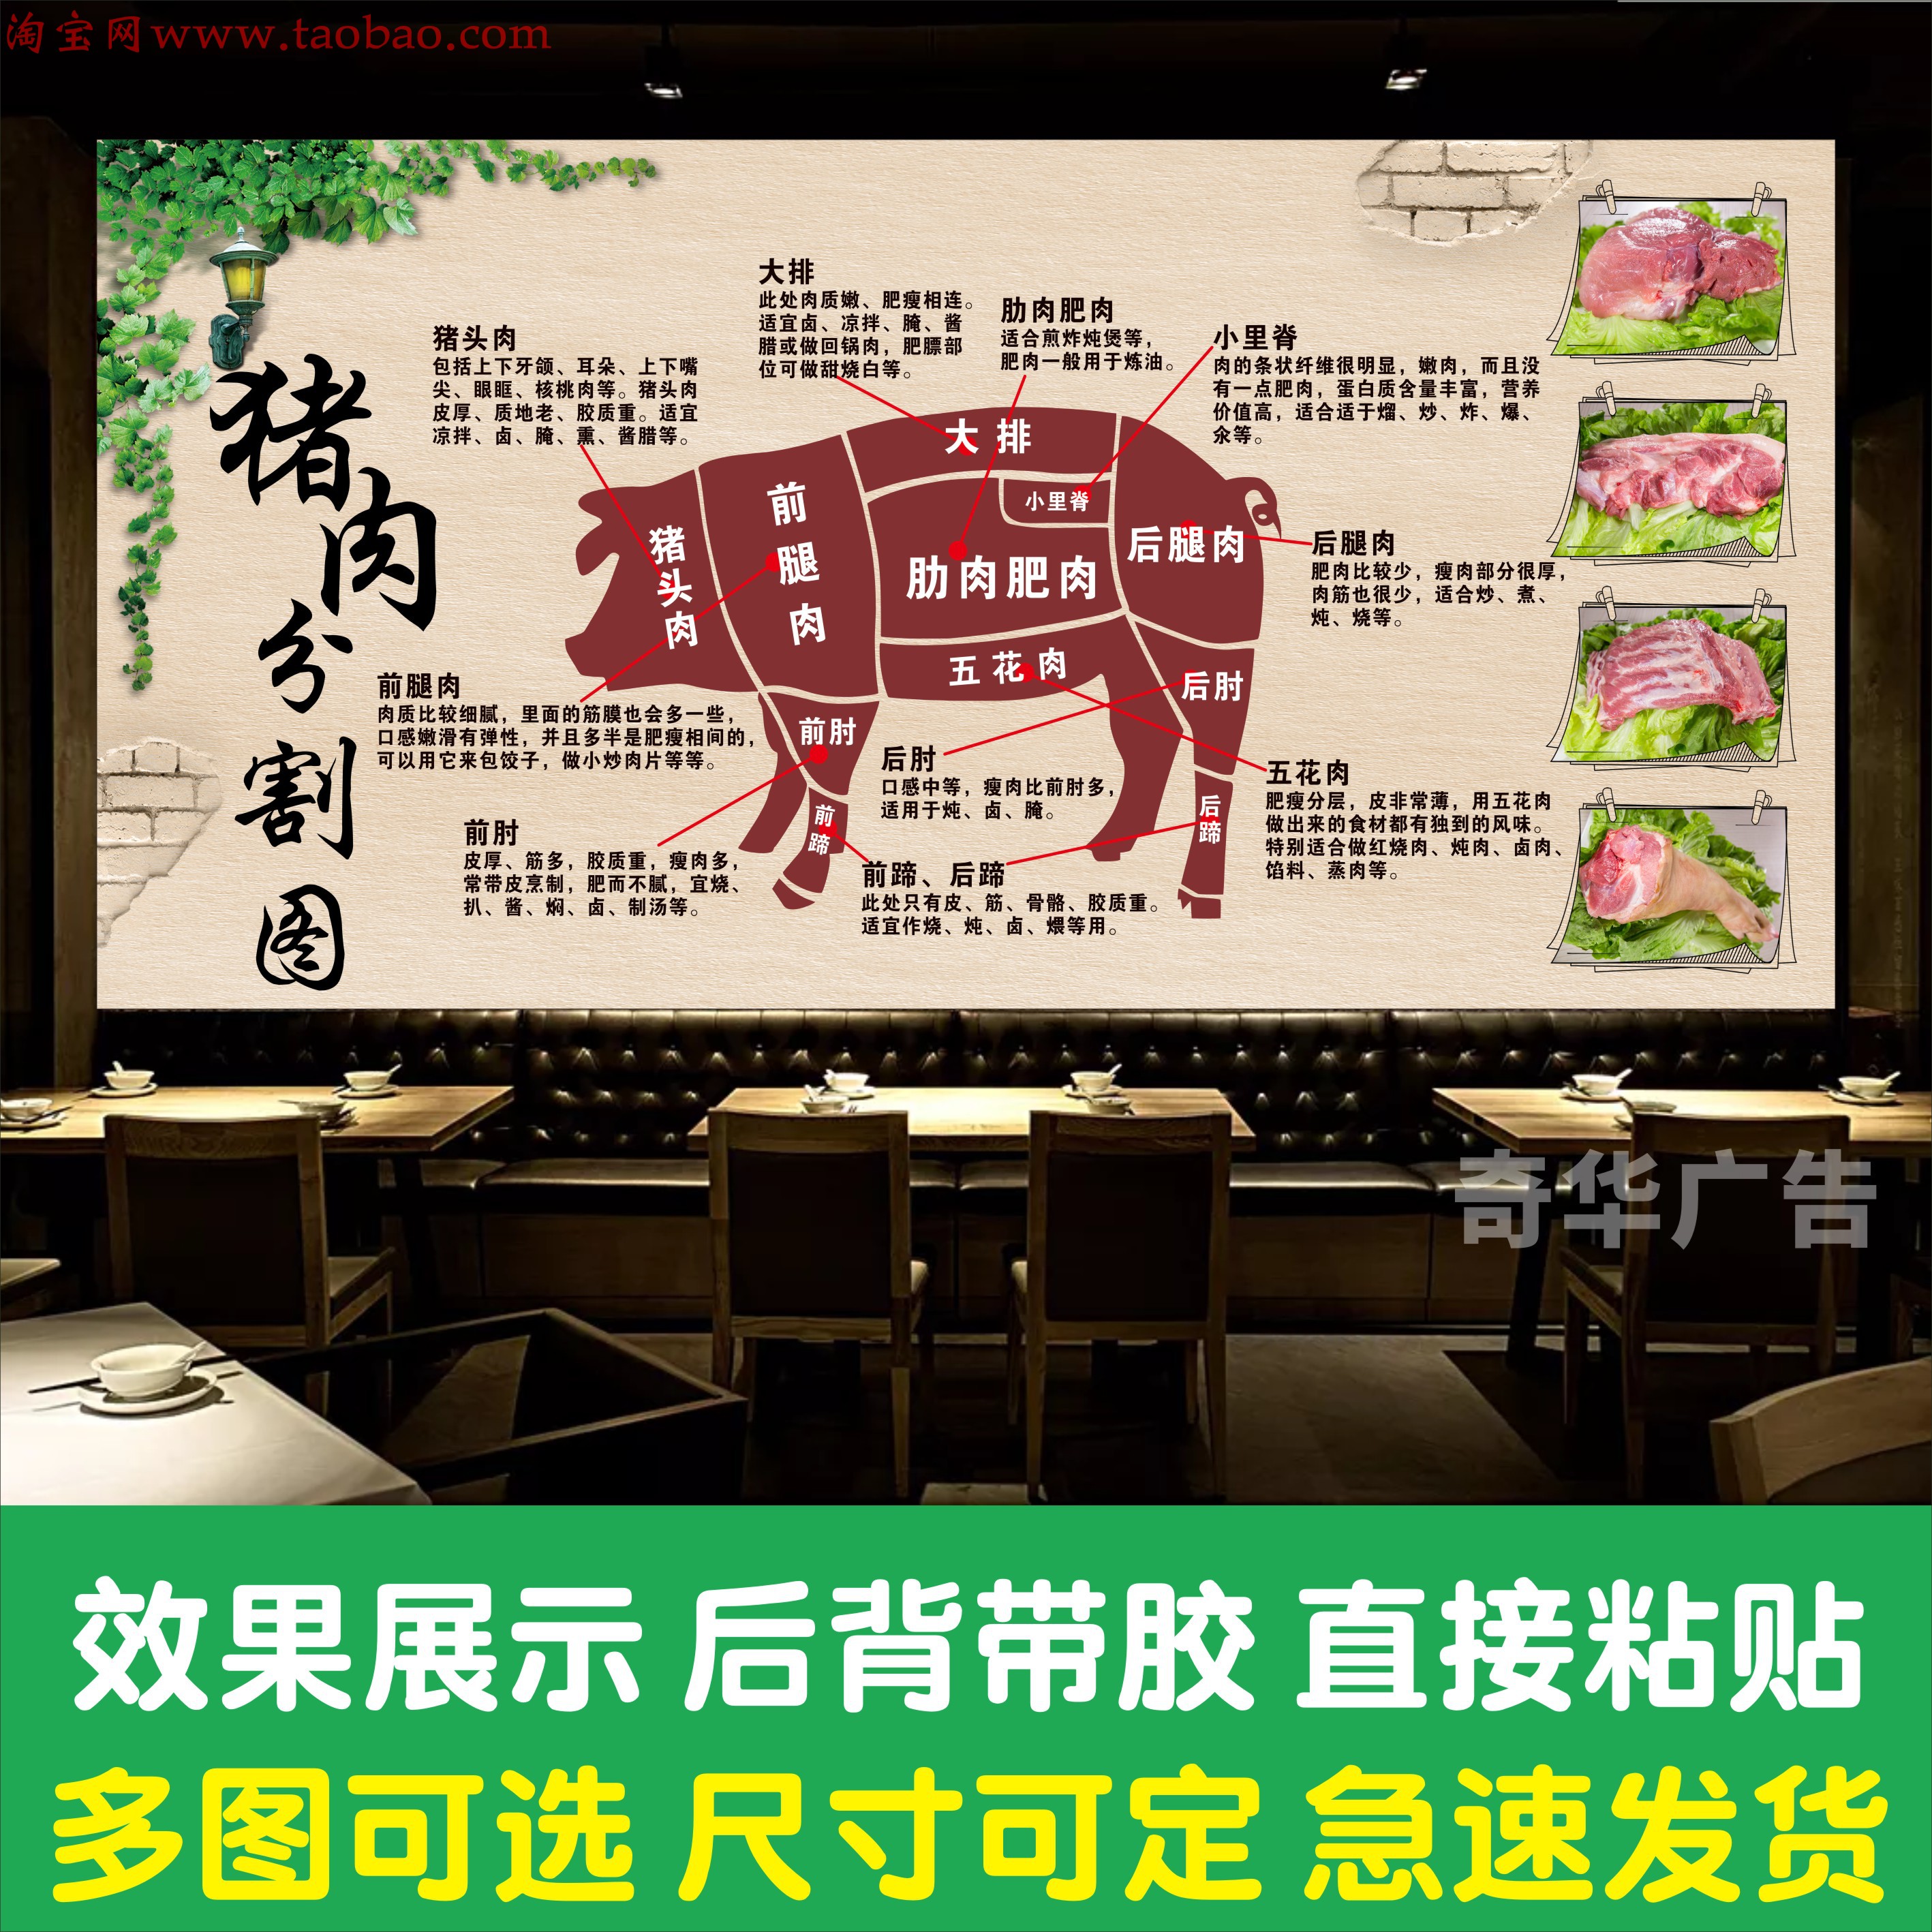 猪肉牛肉羊肉分割部位图广告海报生鲜超市火锅店装饰画背景墙贴纸